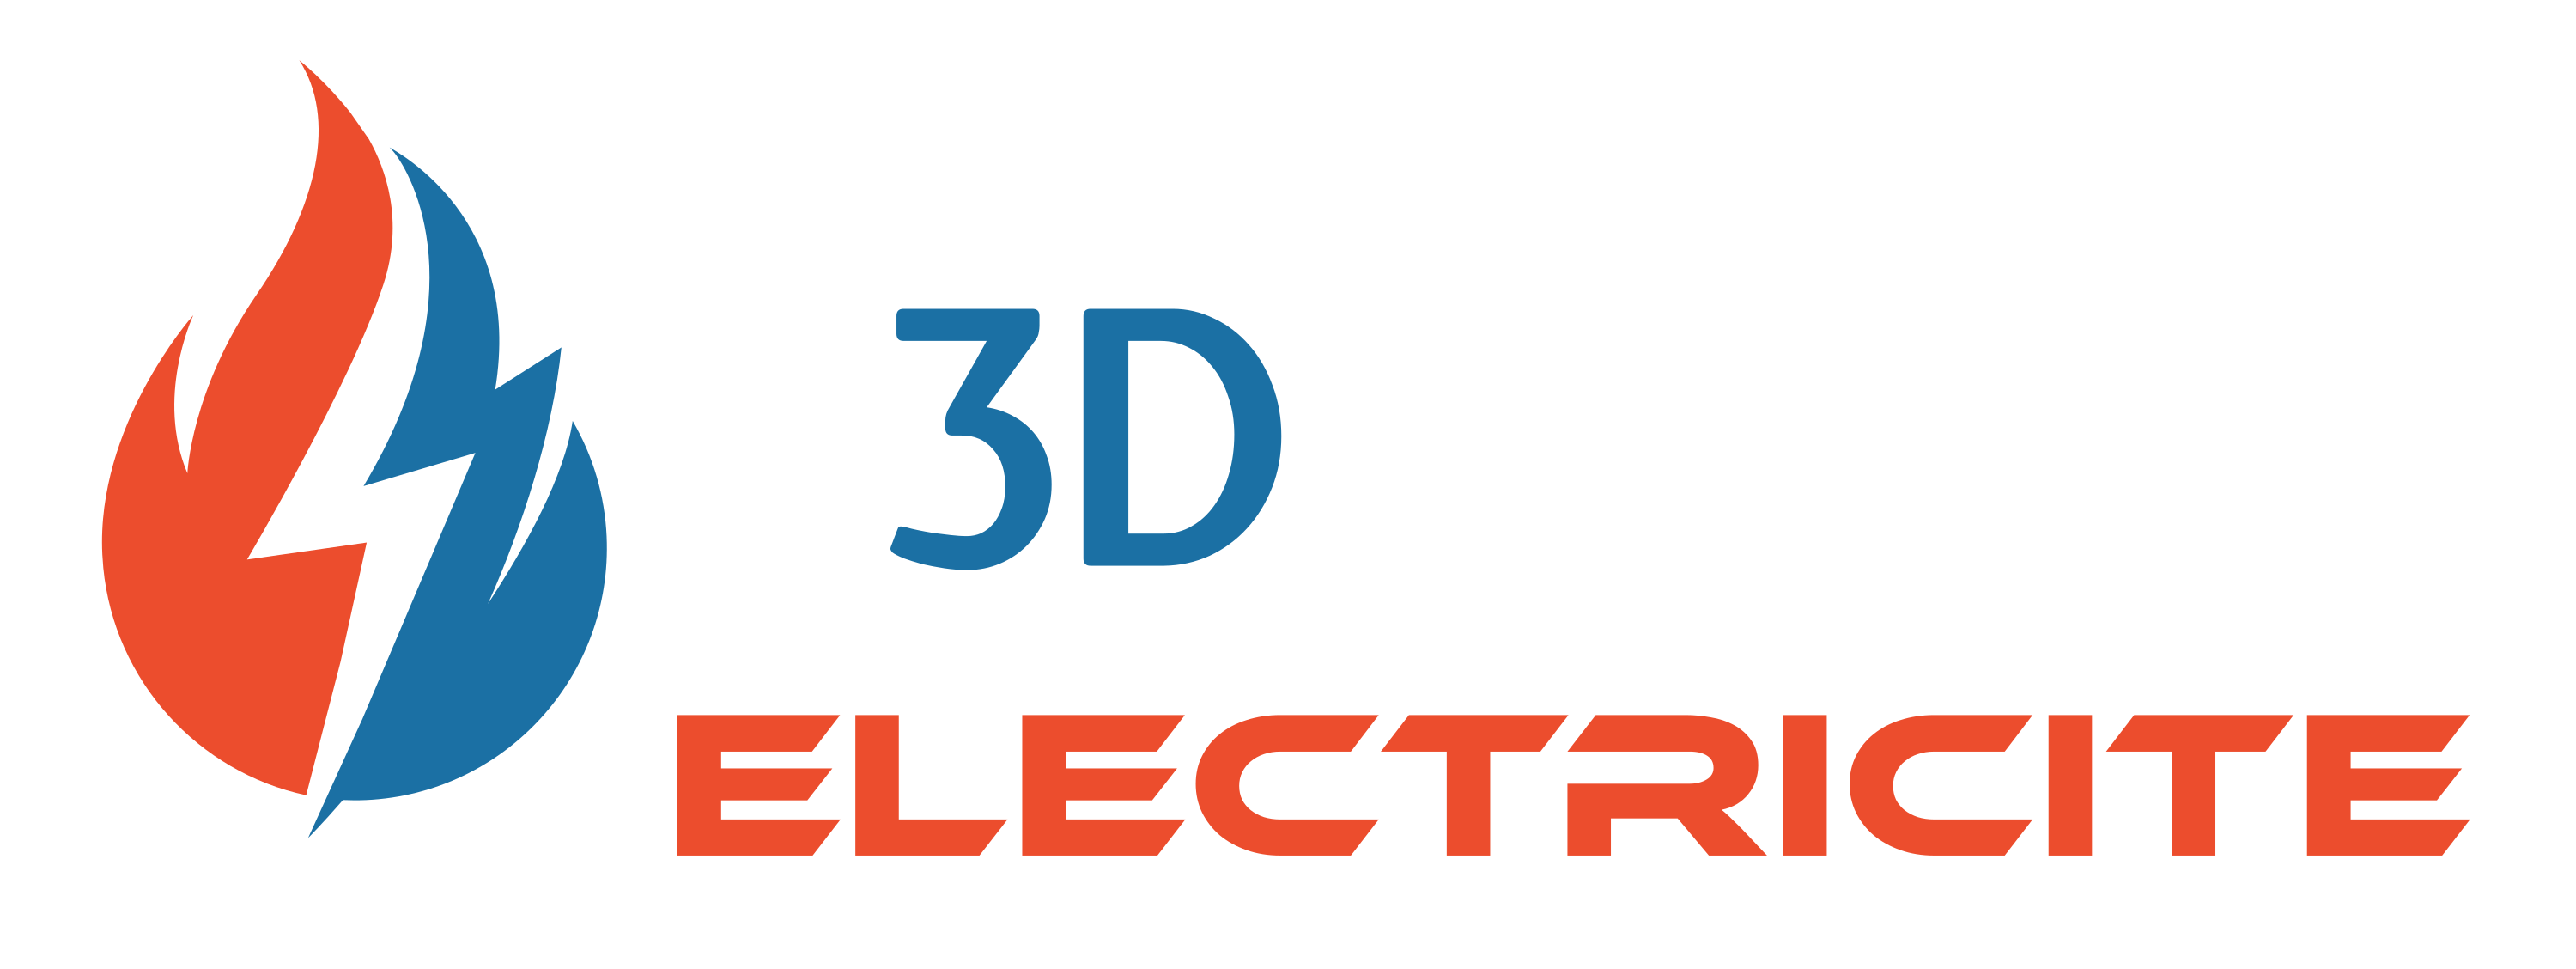 3D Electricité